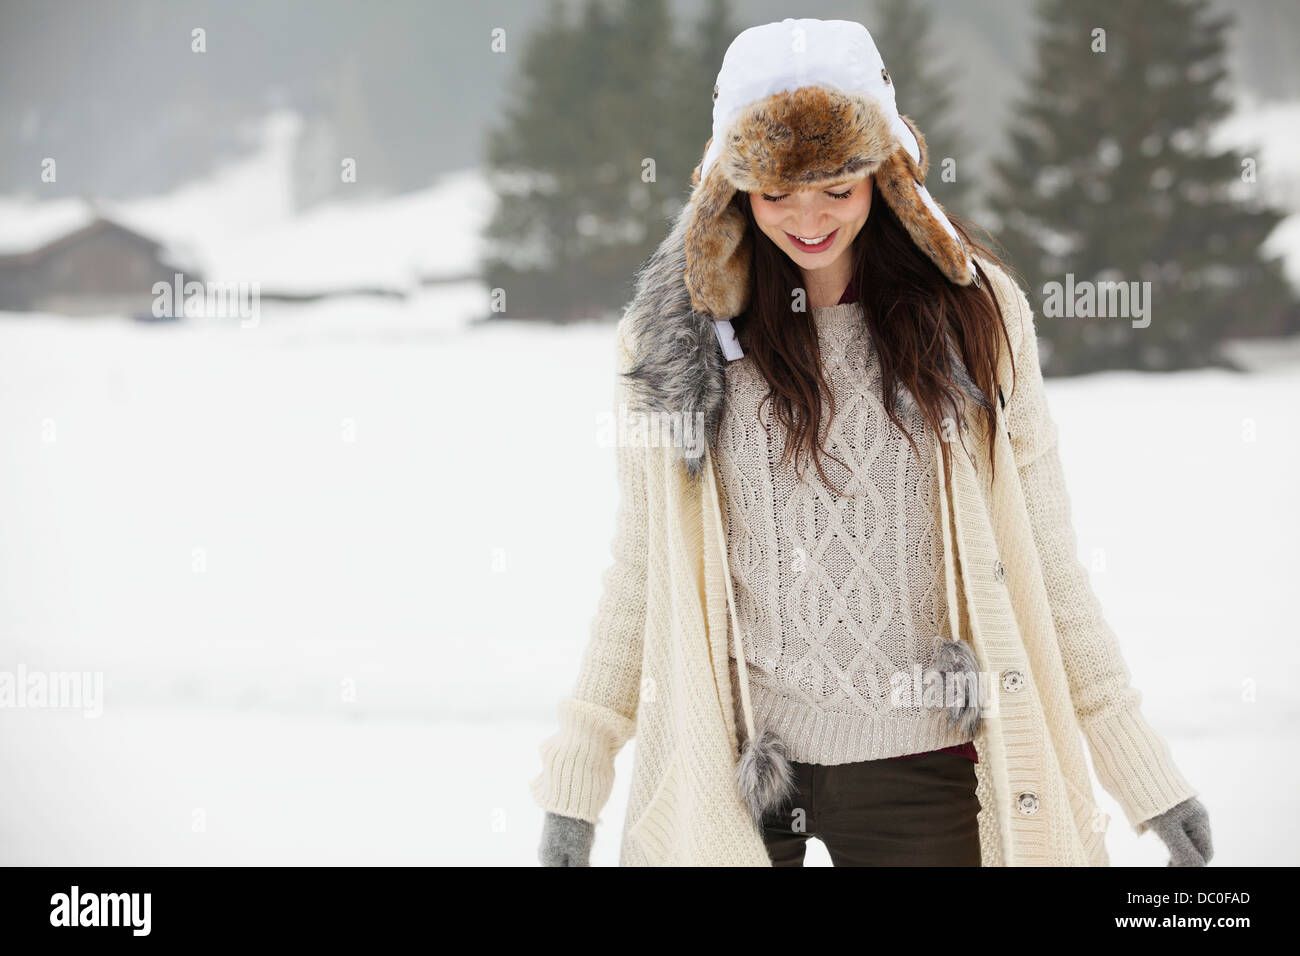 Smiling woman wearing fur hat in snowy field Stock Photo